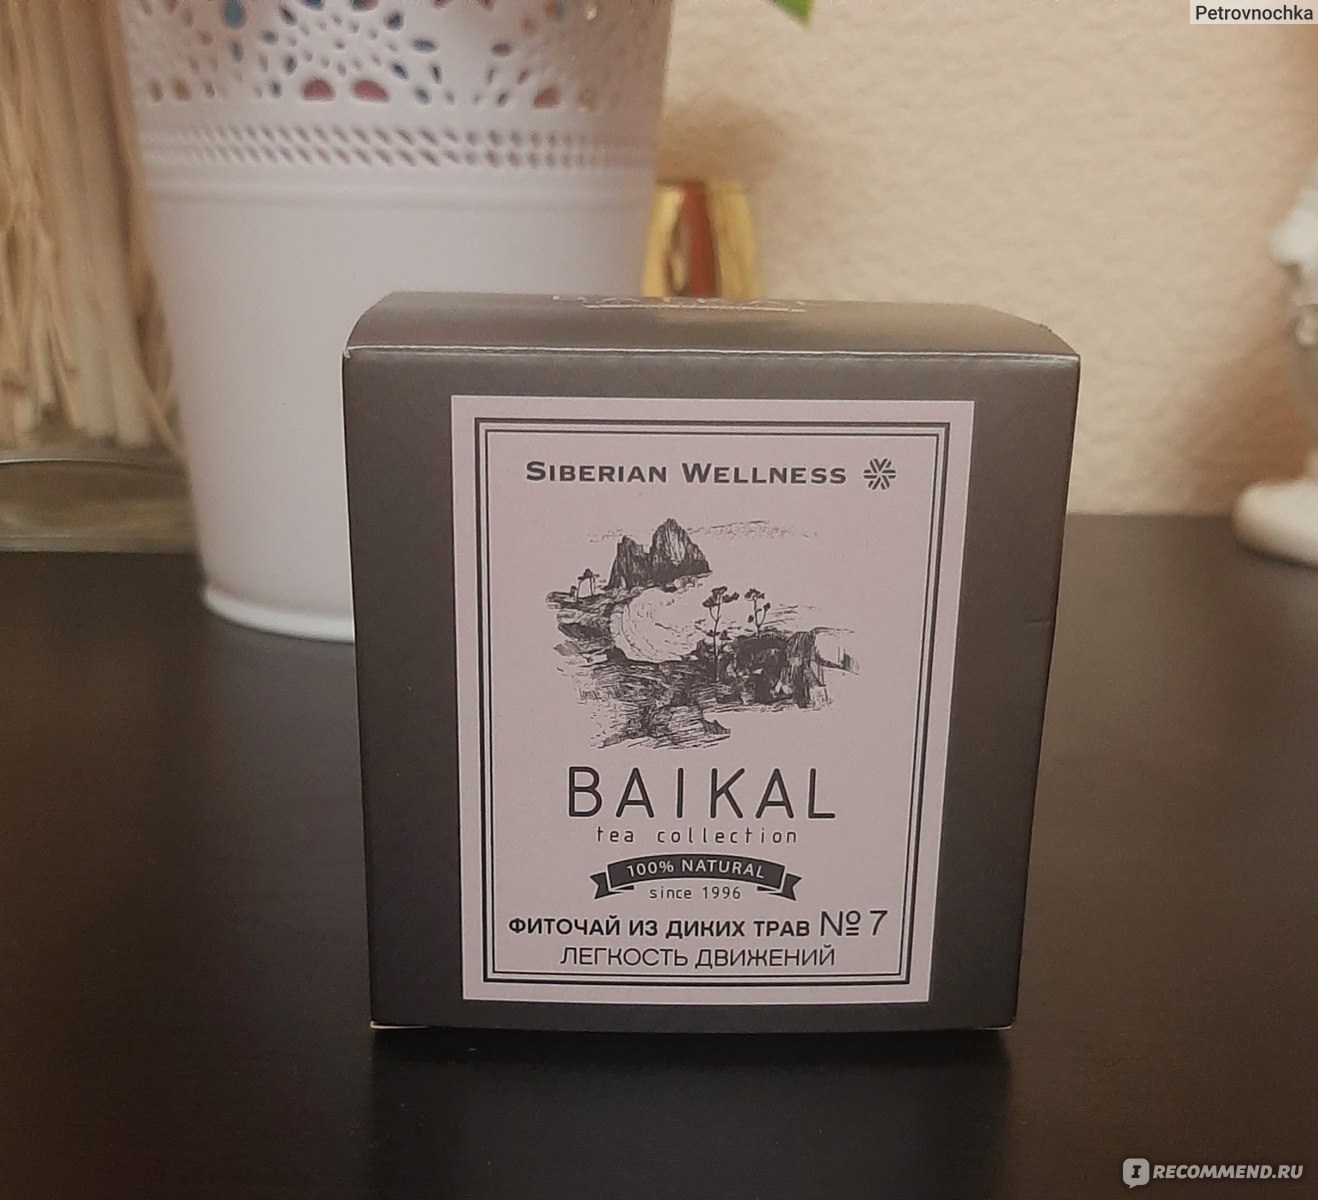 Фиточай Siberian Wellness (Сибирское здоровье)  из диких трав № 7 (Легкость движений) - Baikal Tea Collection фото